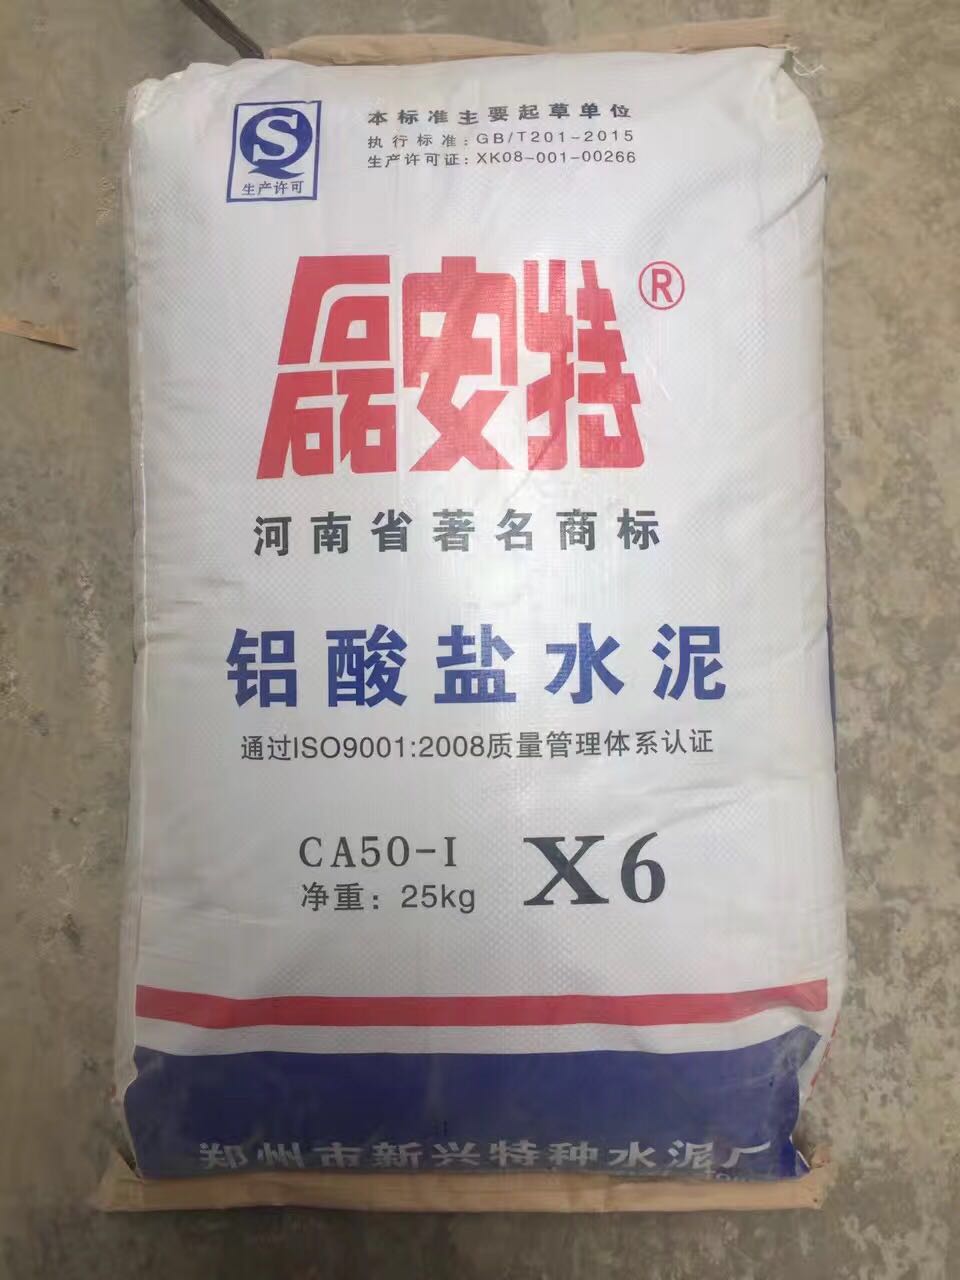 新品高铝水泥水泥制品水泥产地货源河南磊安特水泥生产厂家